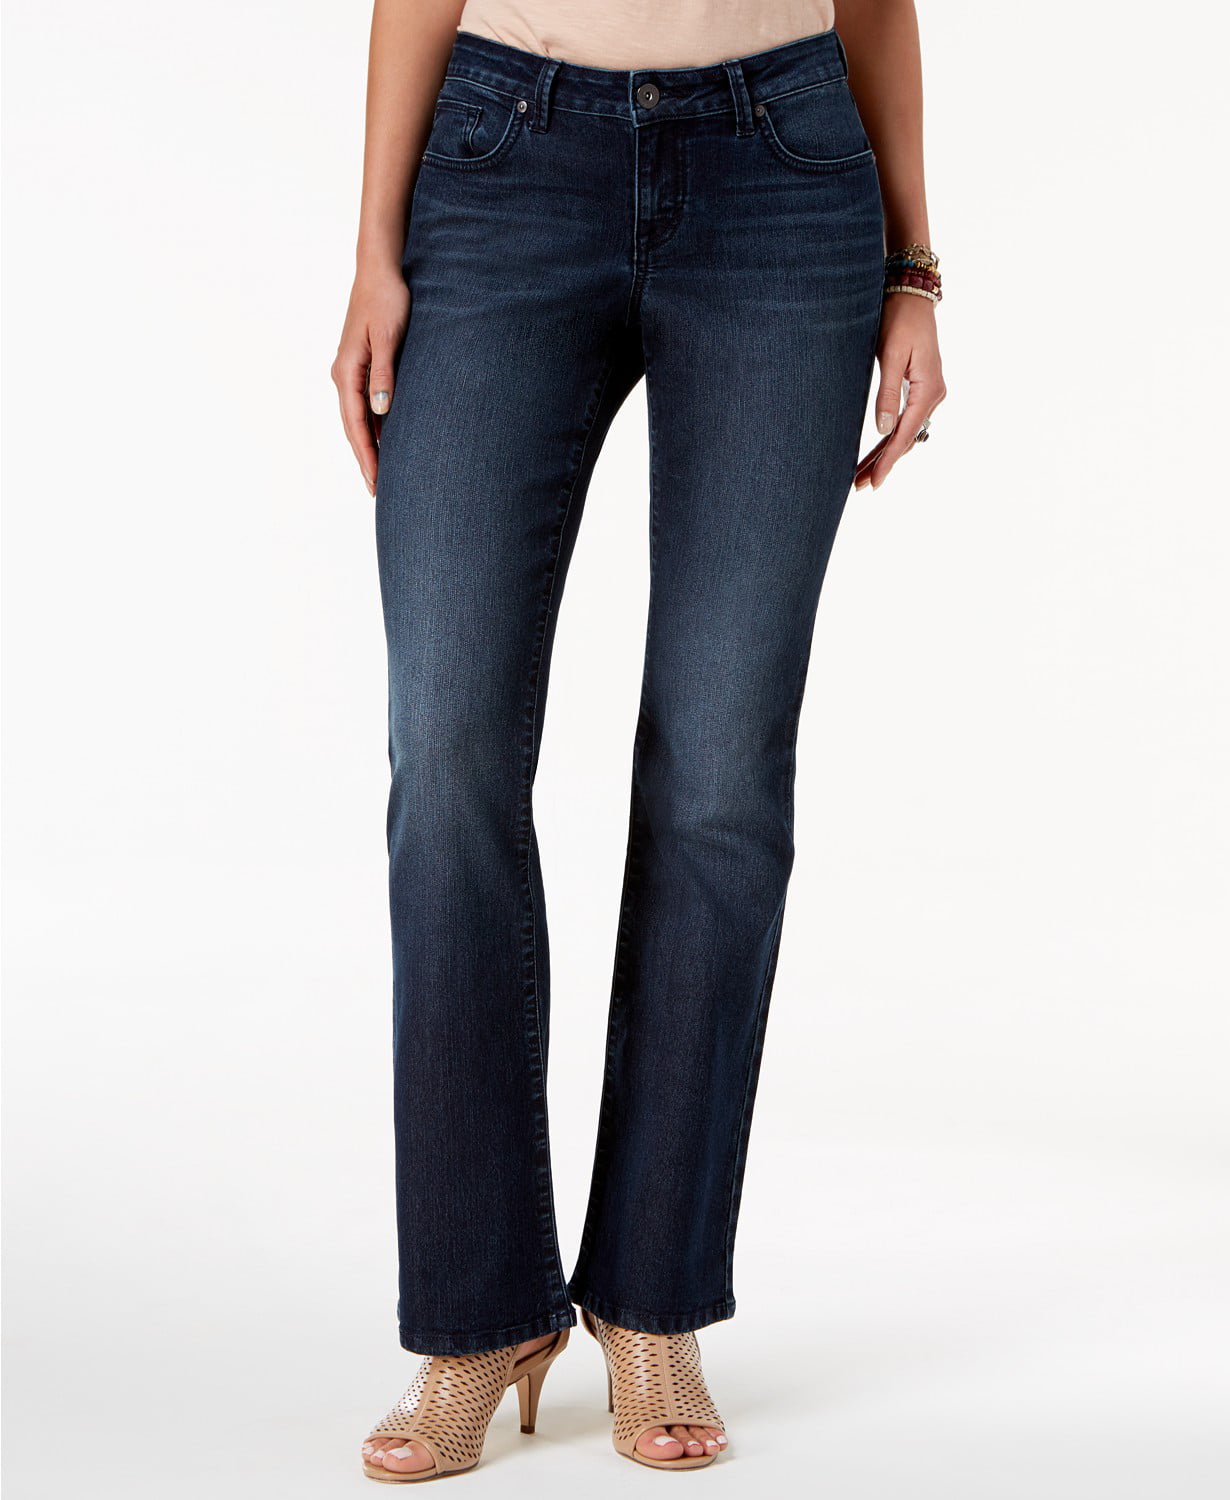 Style & Co - Curvy-Fit Low-Rise Boot-Cut Jeans - Petites - 4P - Walmart.com